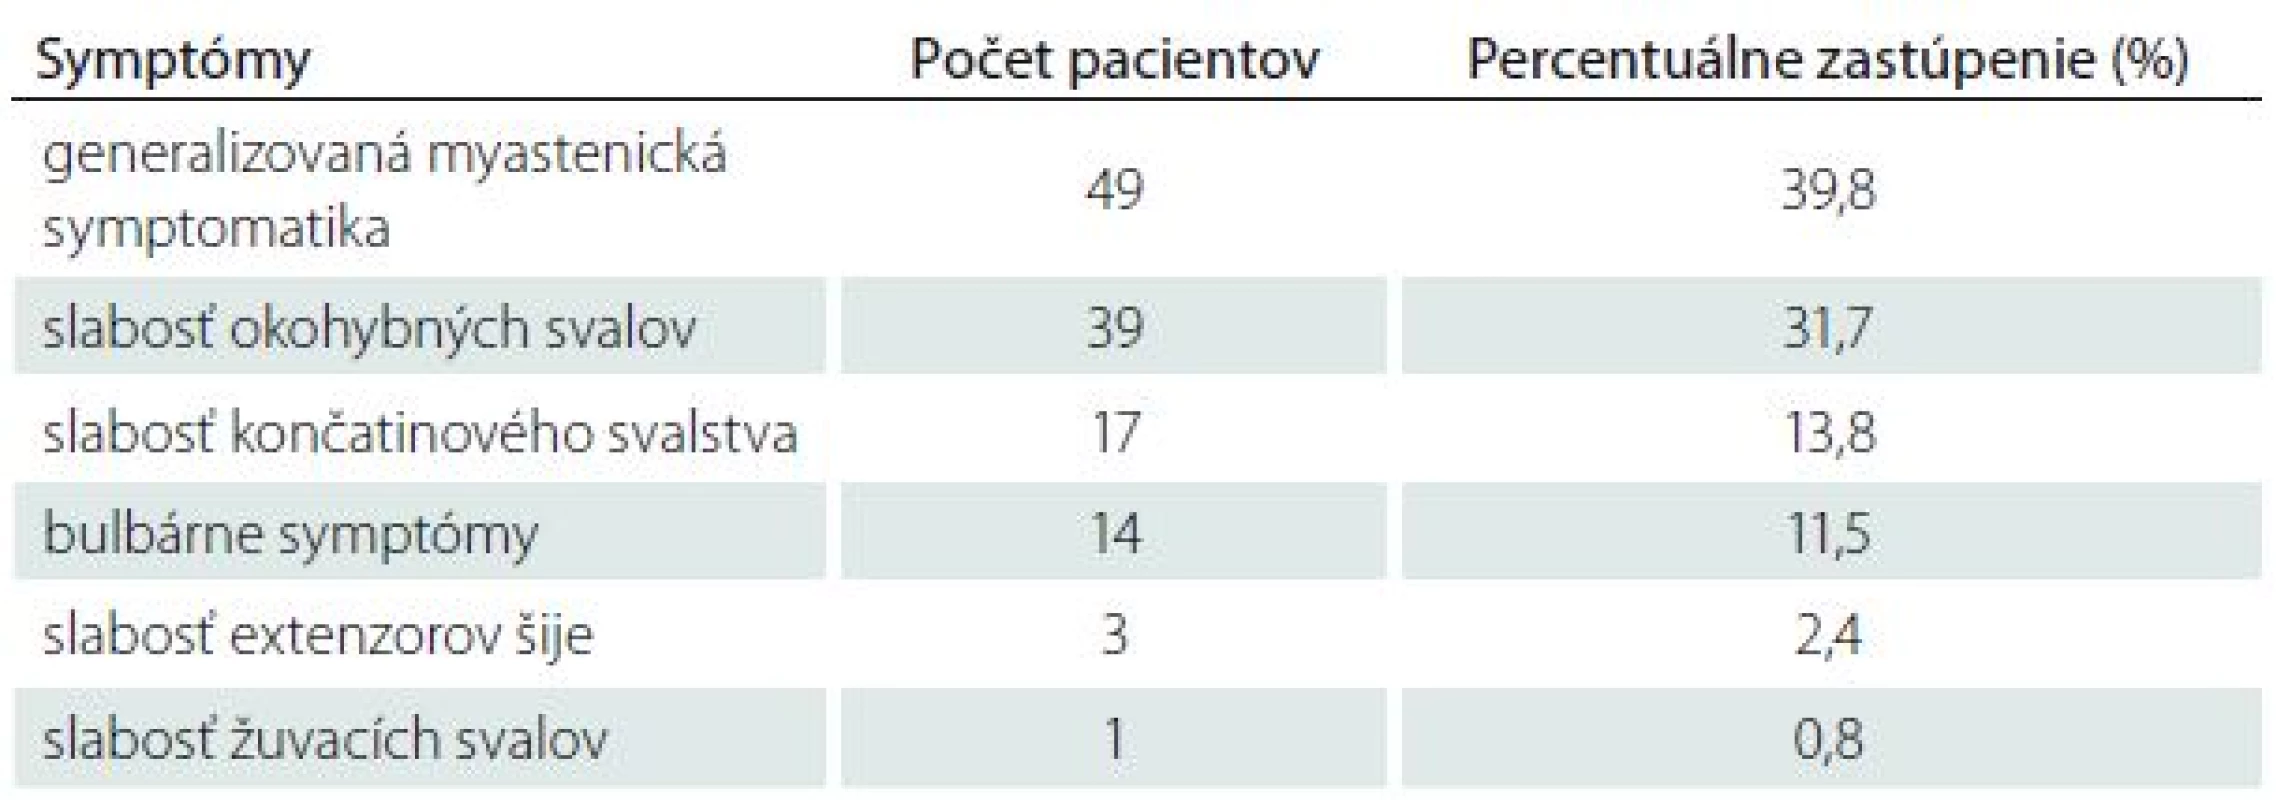 Iniciálne príznaky u pacientov s MGAT v Slovenskej republike.